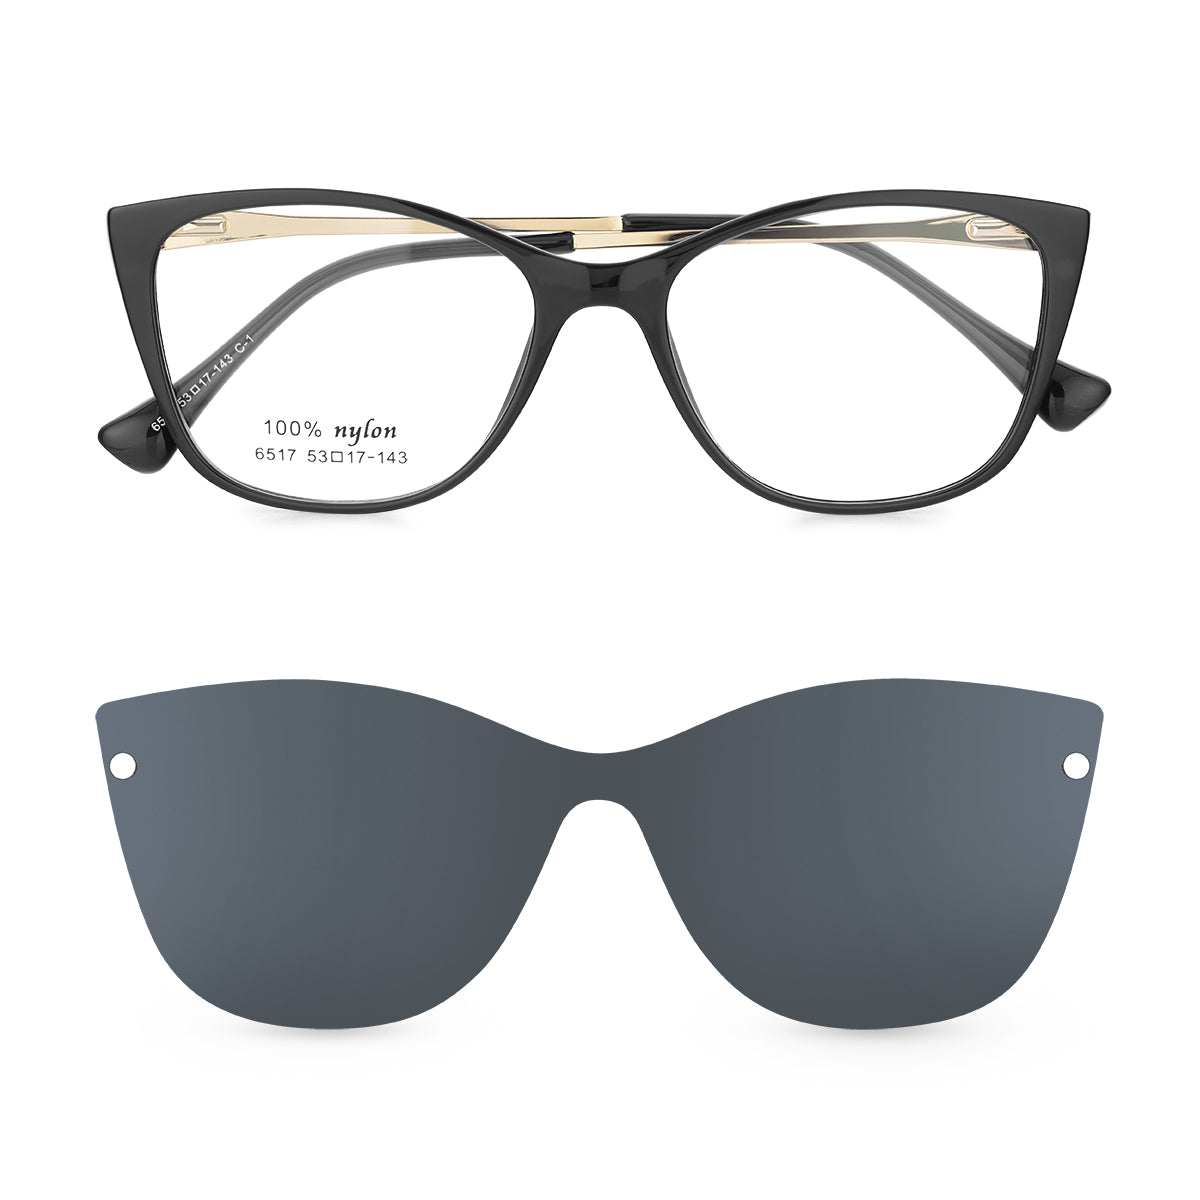 Óculos de Grau Kessy 291